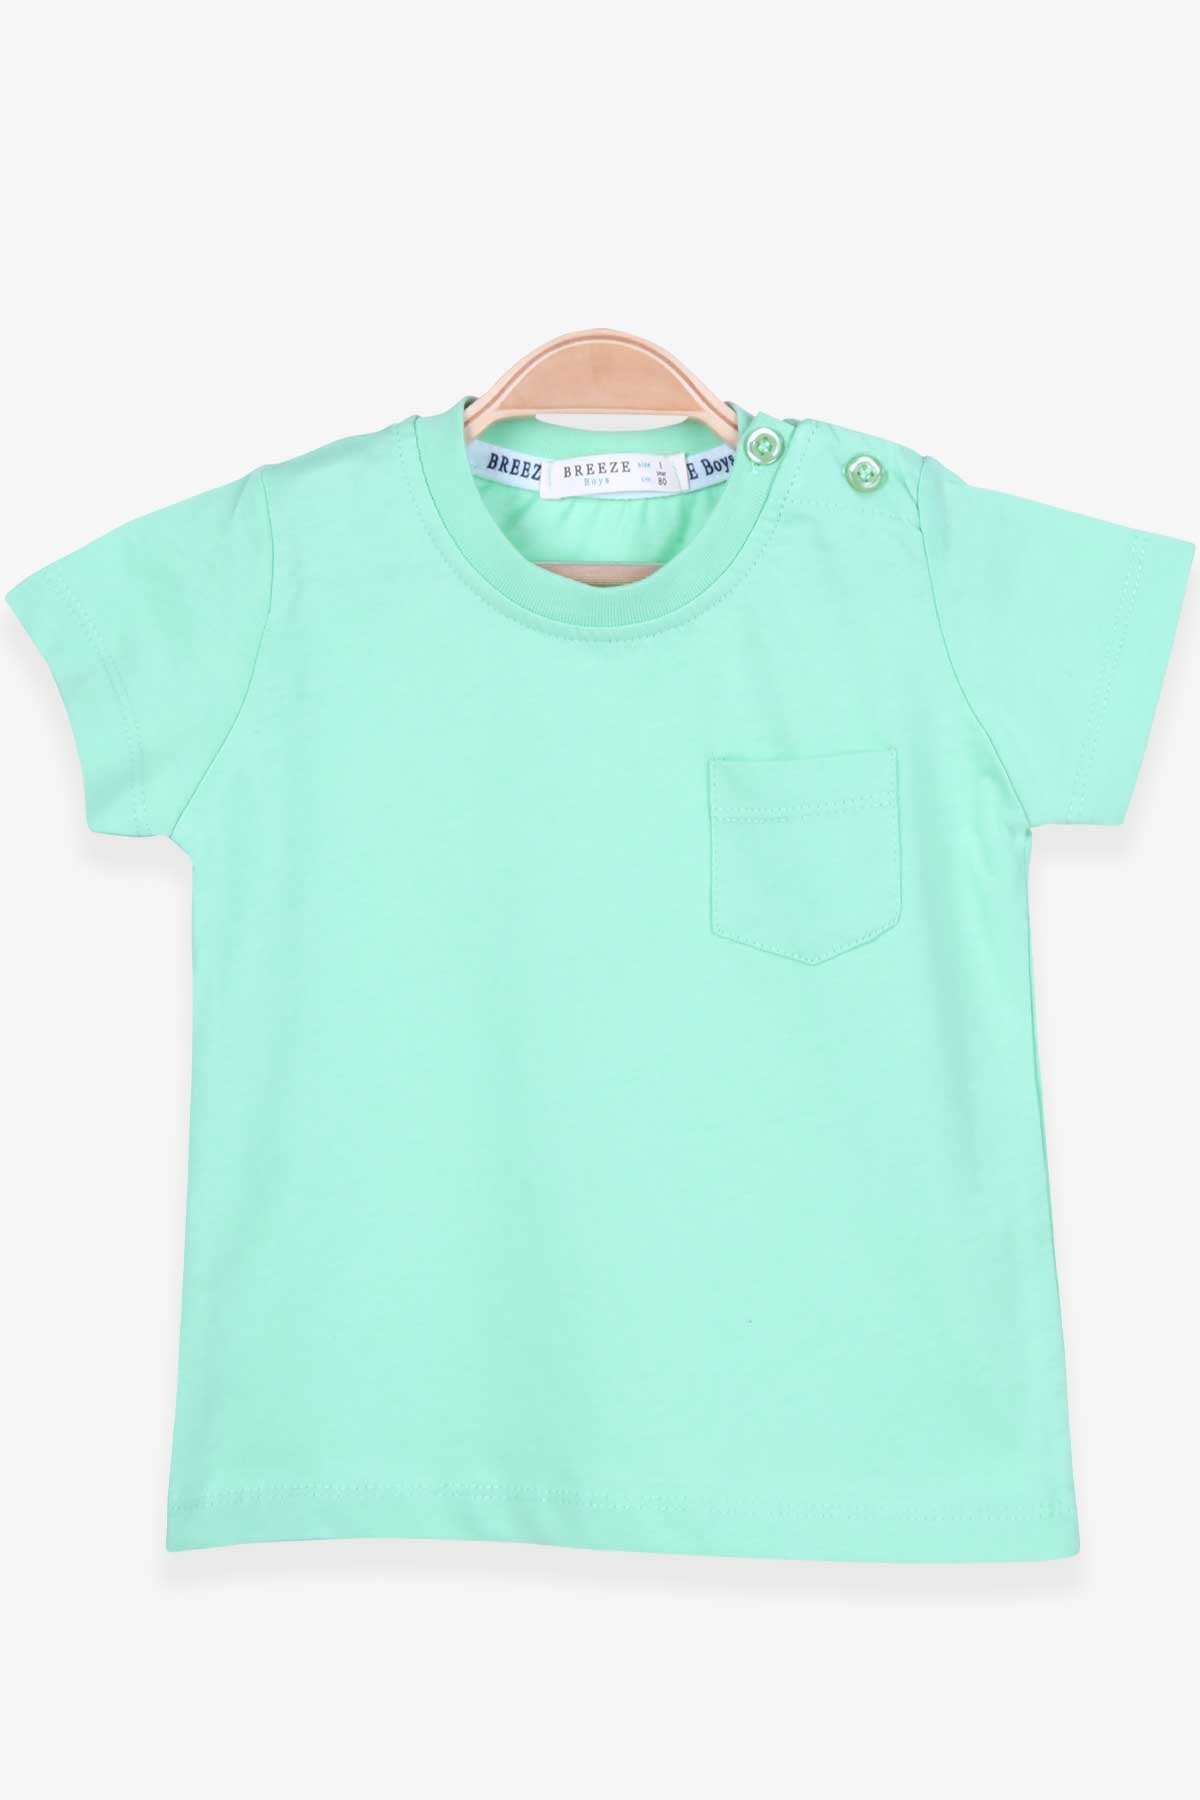 Erkek Bebek Tişört Cepli Mint Yeşili 9 Ay-1 Yaş - Yazlık Bebek Tişörtleri |  Breeze